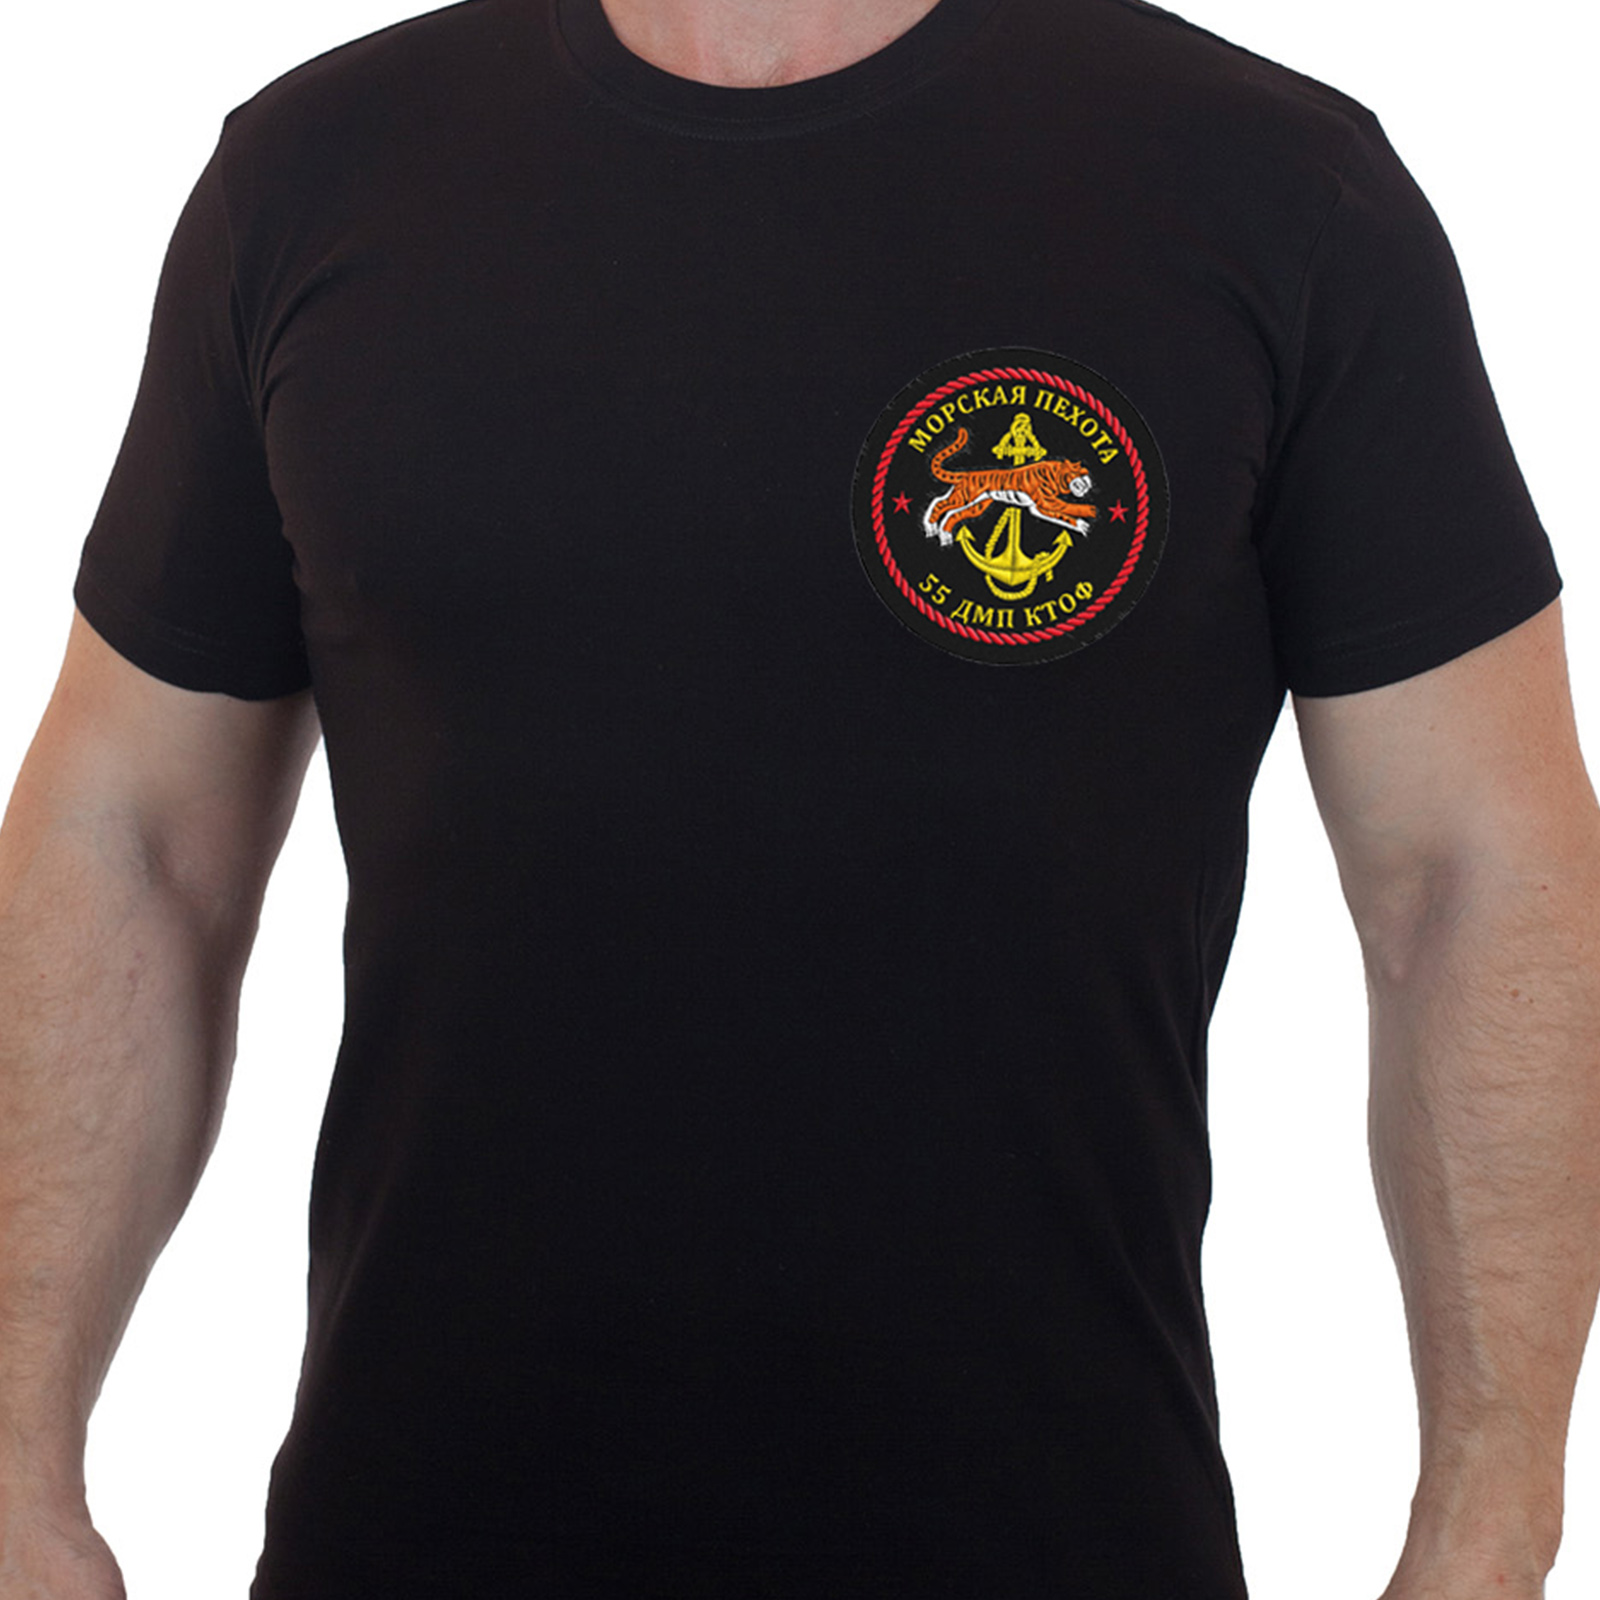 Купить футболку хлопковую с вышитой эмблемой Морпехов 55 ДМП КТОФ с доставкой онлайн